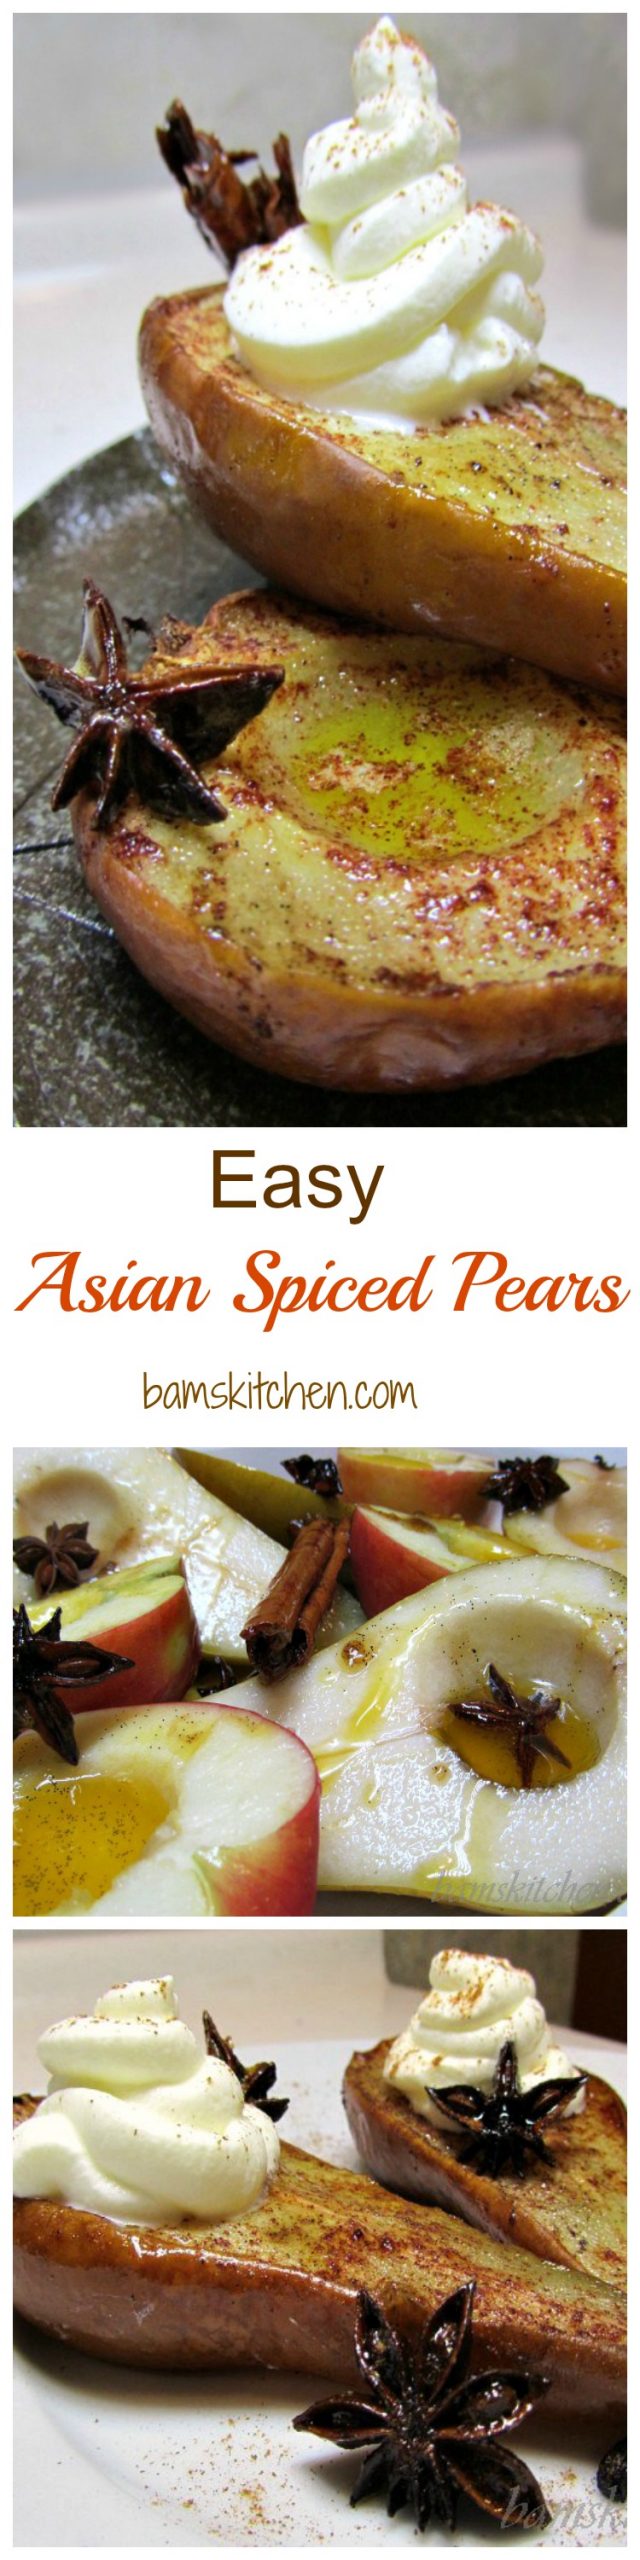 Easy Asian Spiced Pears- Healthy World Cuisine